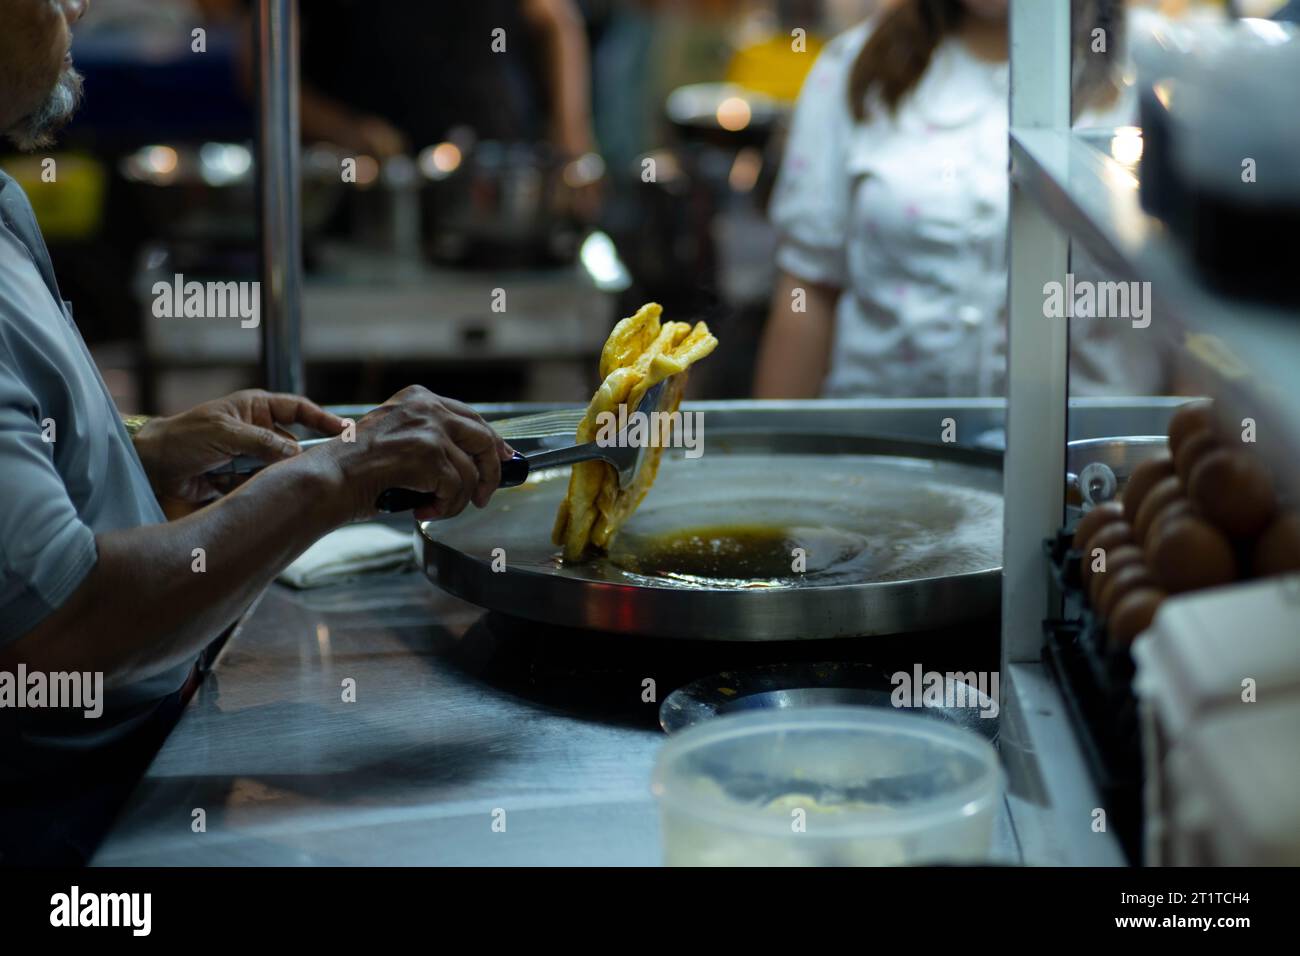 Fabrication de roti, roti battre la farine par roti Maker avec de l'huile. Crêpe thaïlandaise garnie de lait condensé sucré, puis saupoudrer de sucre. Thai Street Foo Banque D'Images